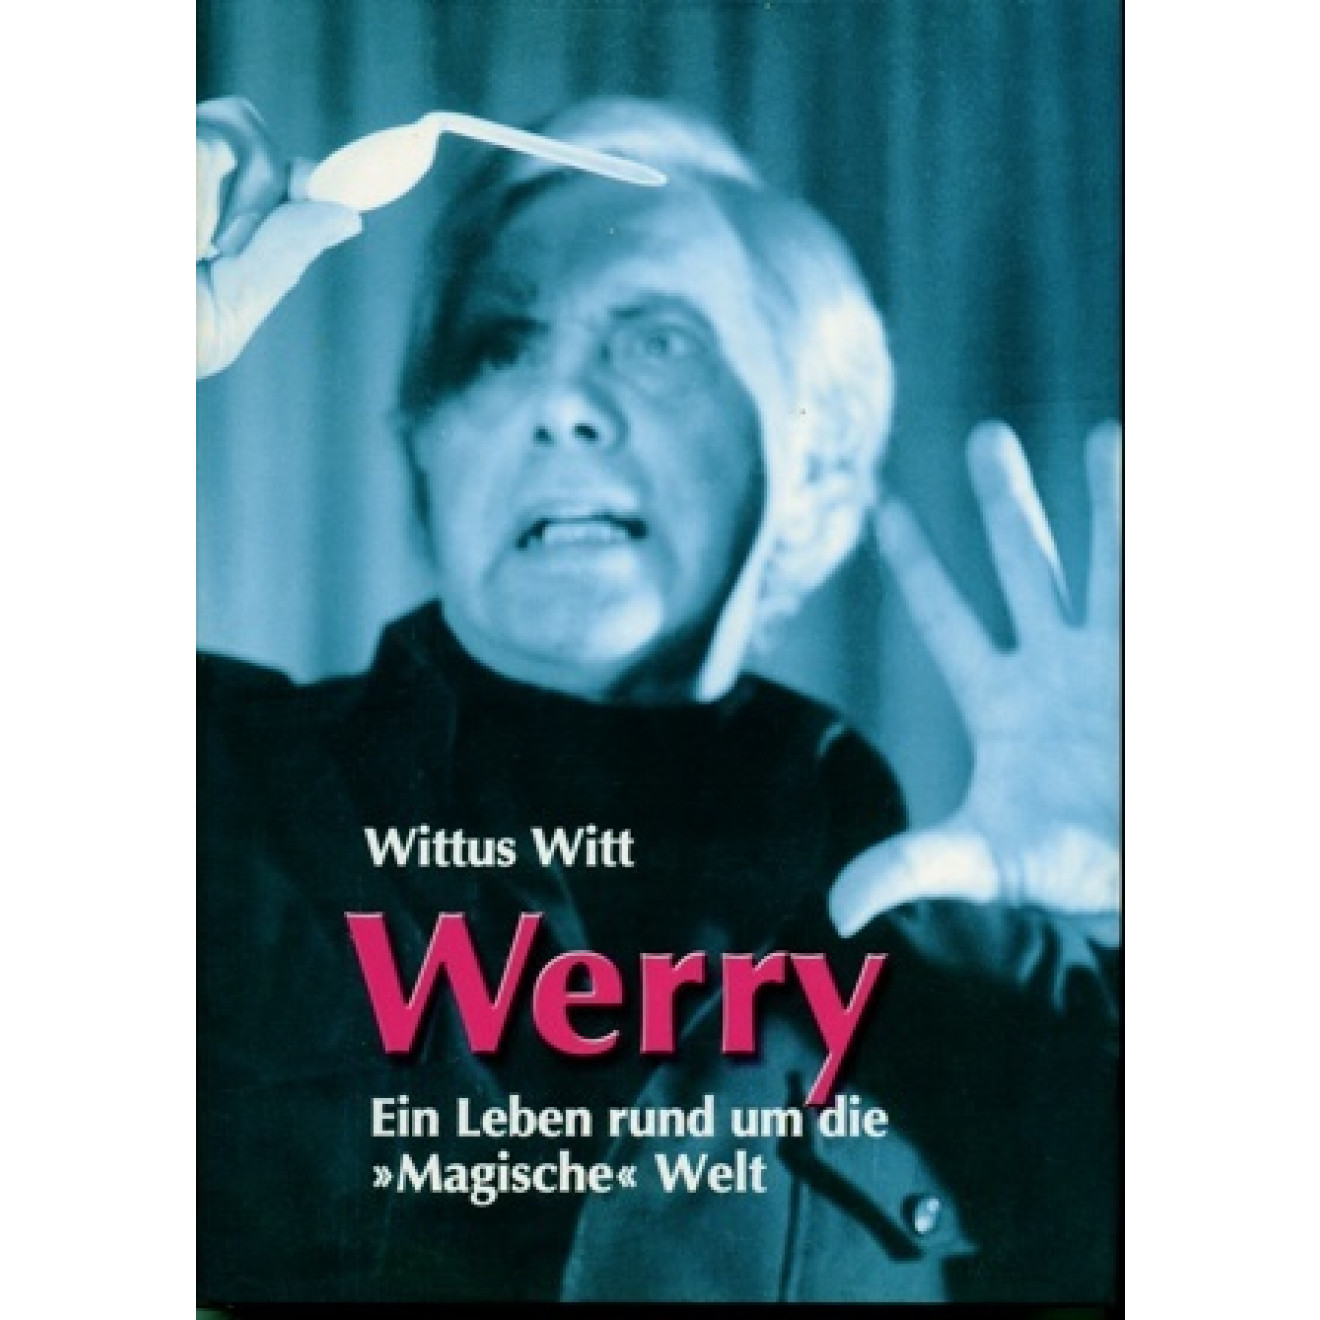 Werry - Ein Leben rund um die "Magische" Welt